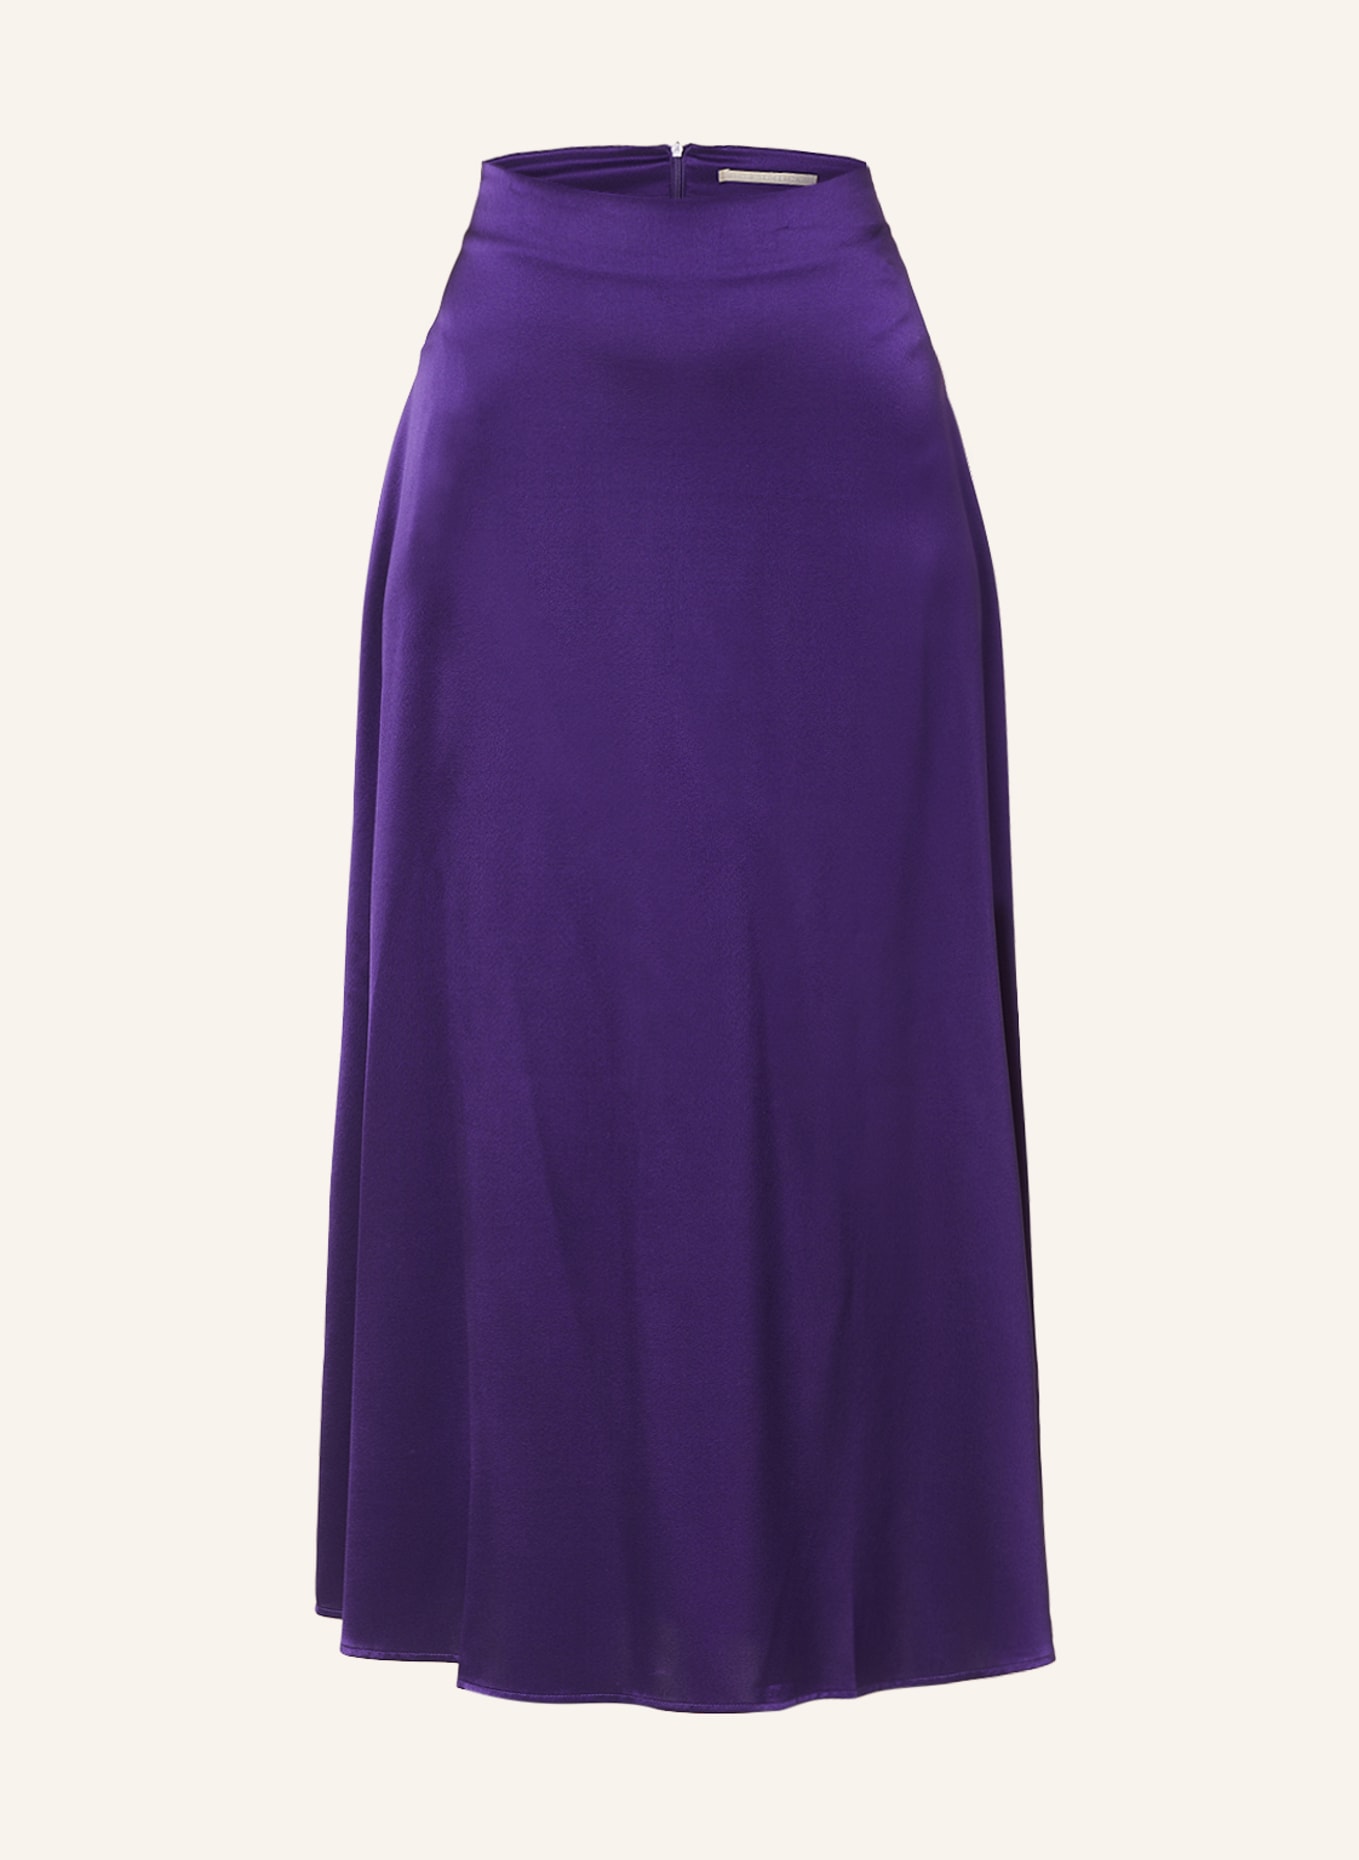 (THE MERCER) N.Y. Silk skirt, Color: PURPLE (Image 1)